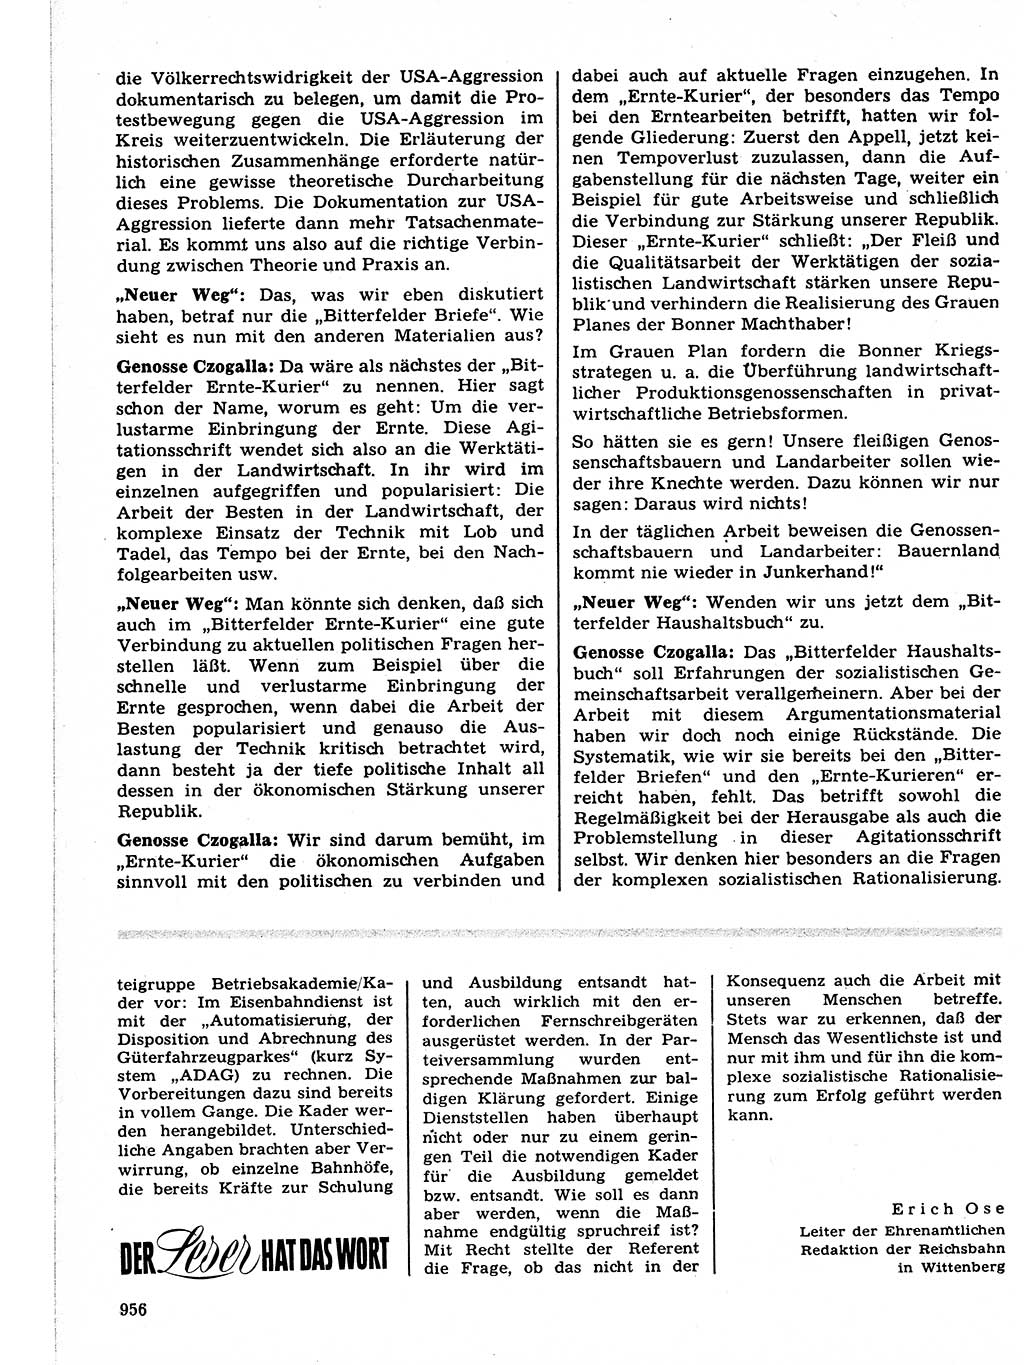 Neuer Weg (NW), Organ des Zentralkomitees (ZK) der SED (Sozialistische Einheitspartei Deutschlands) für Fragen des Parteilebens, 21. Jahrgang [Deutsche Demokratische Republik (DDR)] 1966, Seite 956 (NW ZK SED DDR 1966, S. 956)